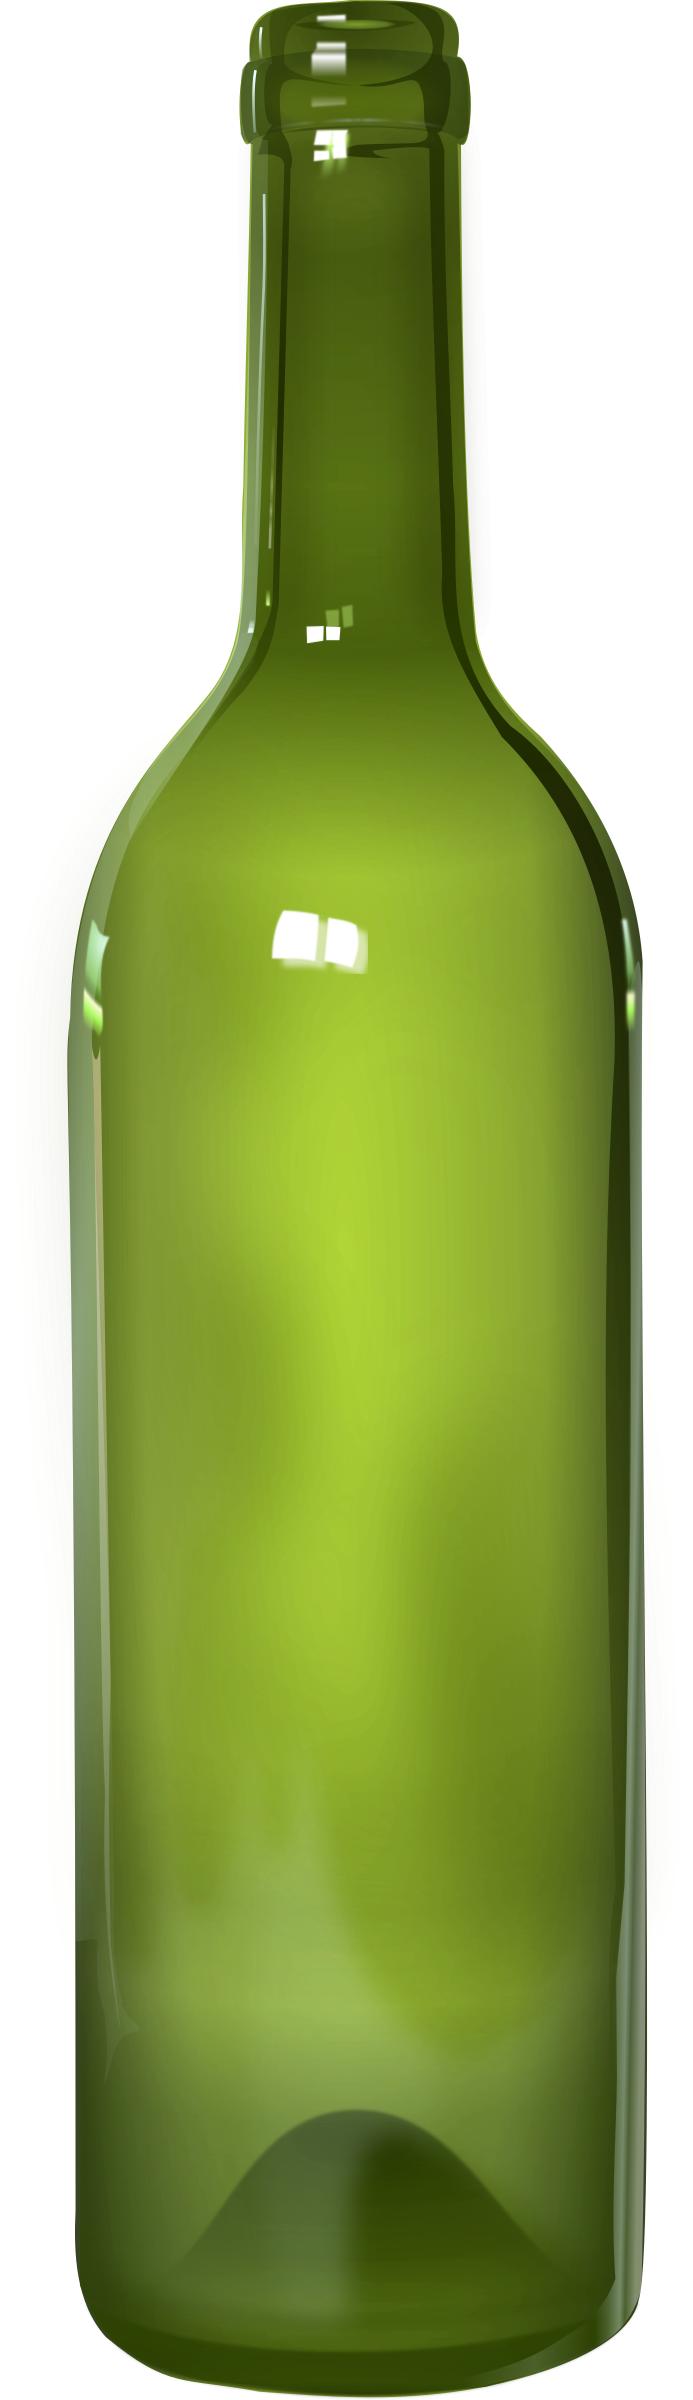 Bottle - detailed png